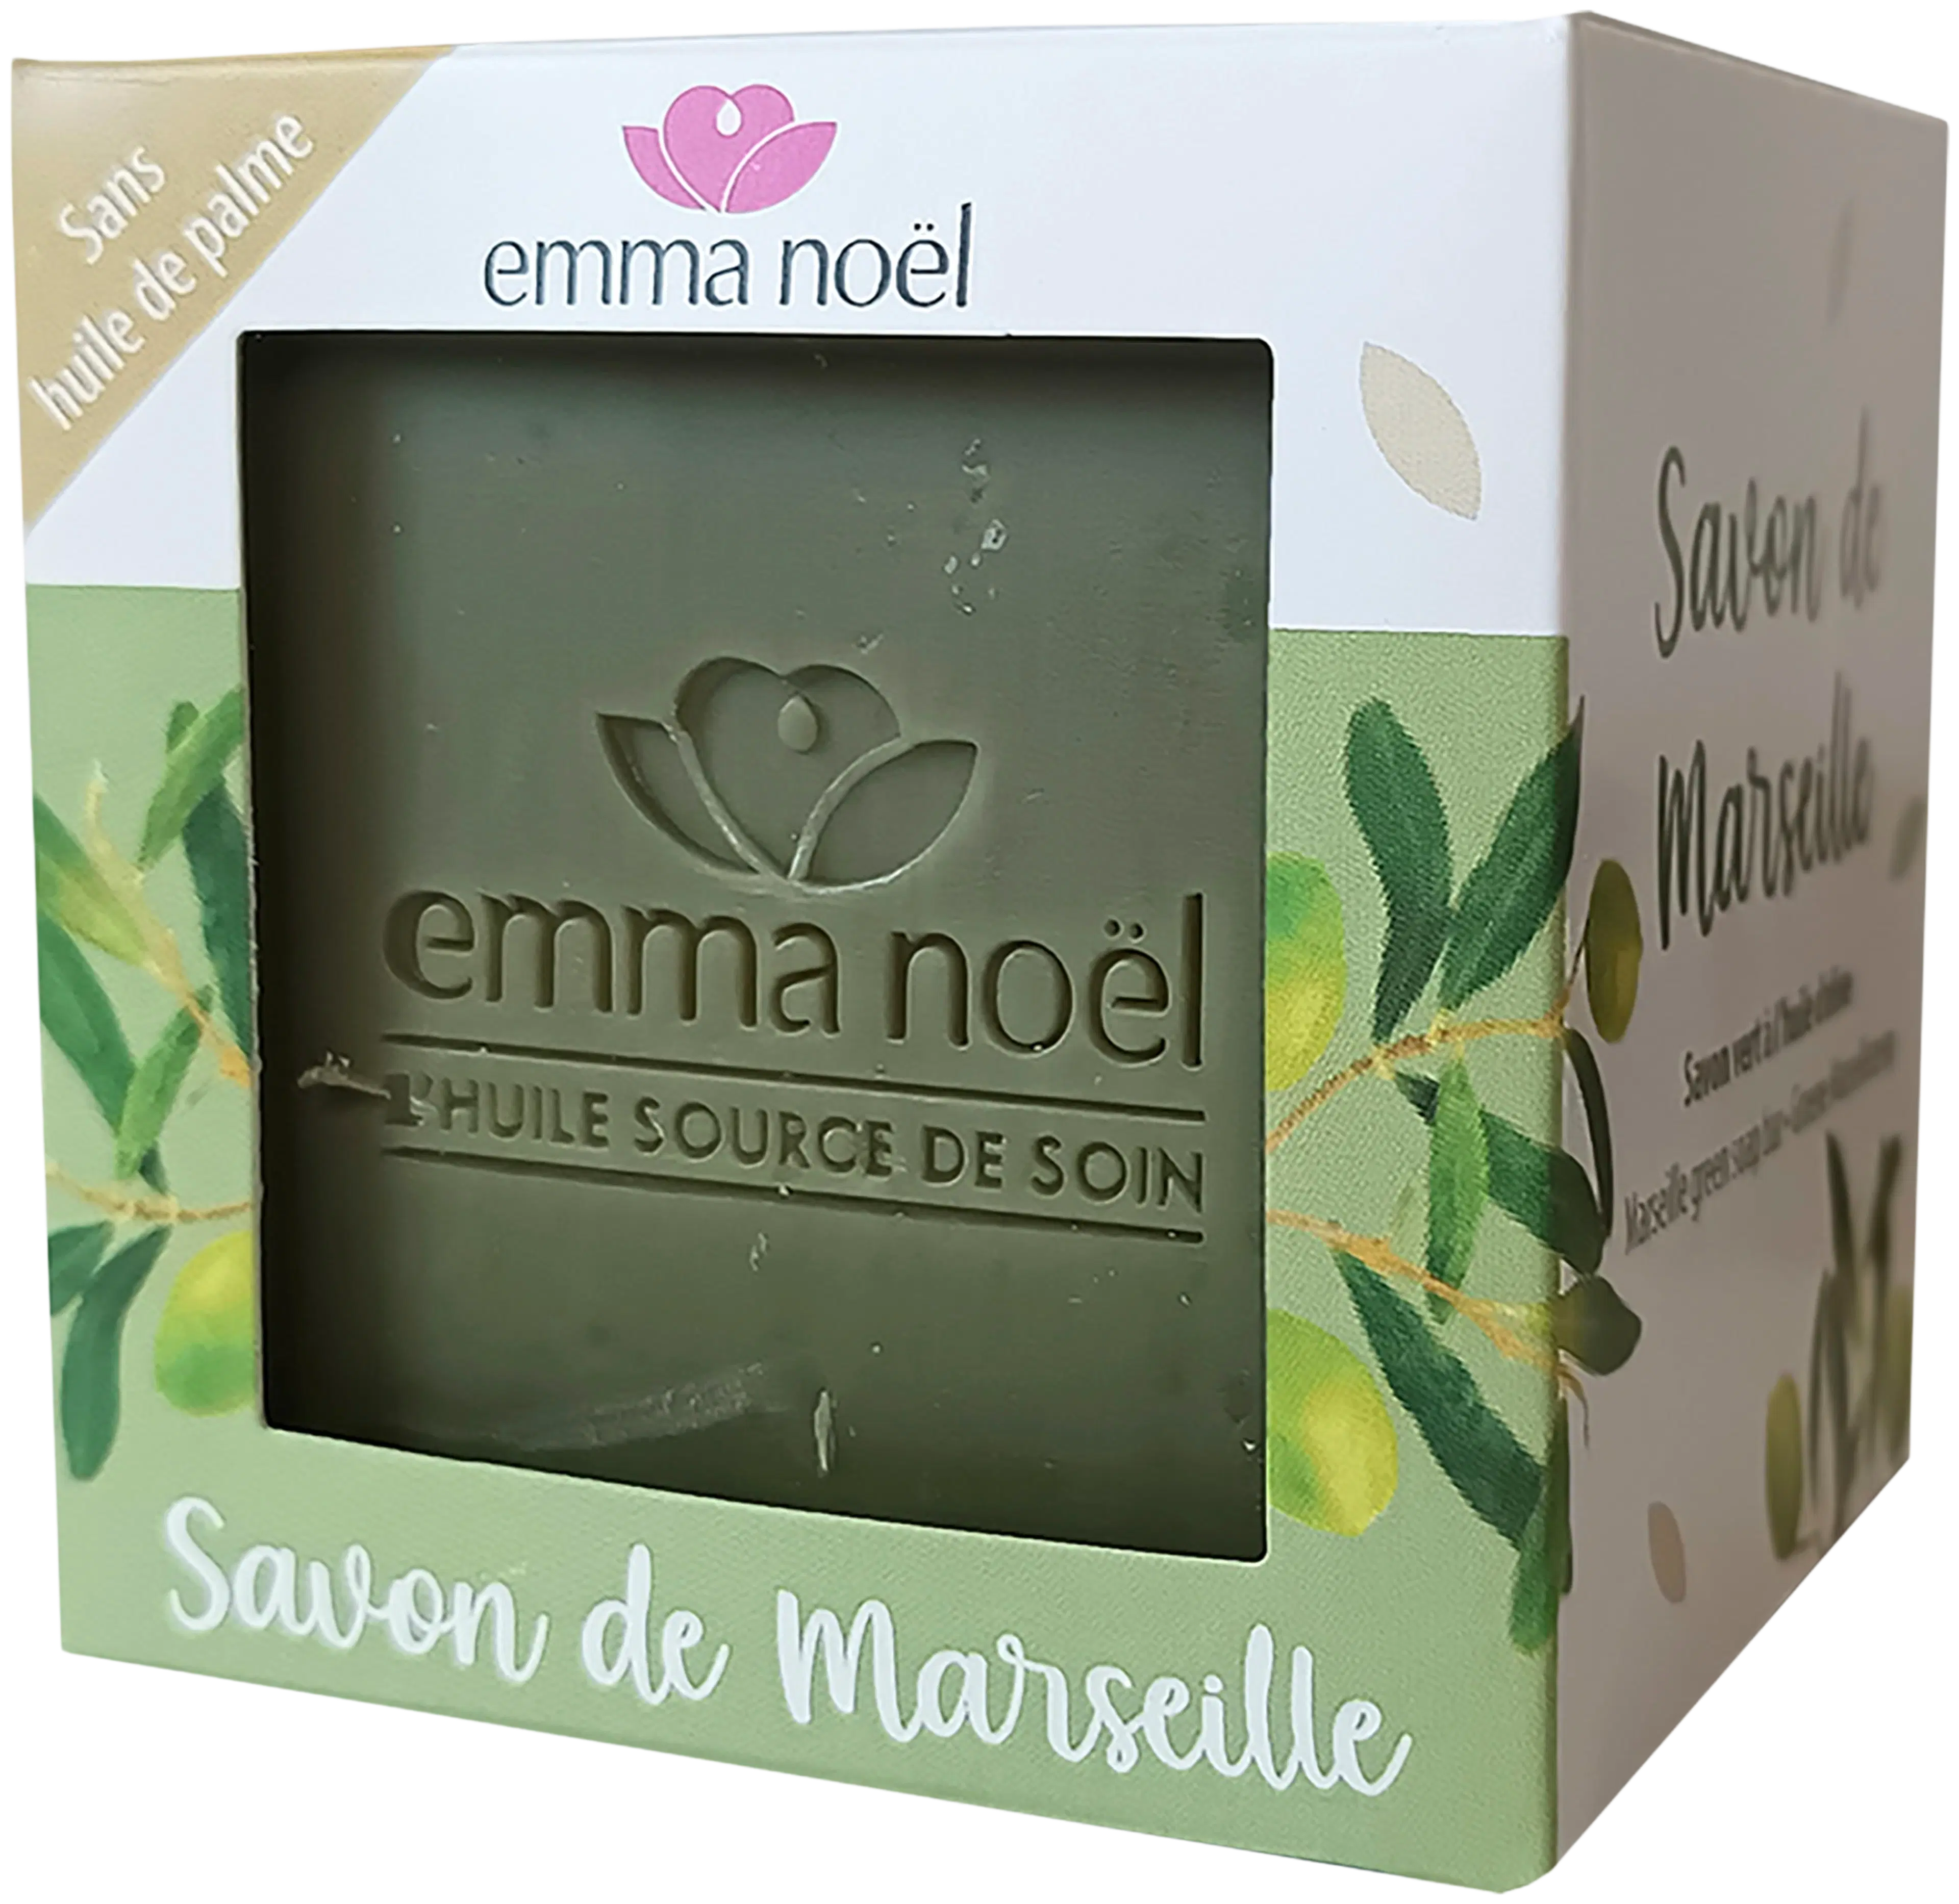 Emma Noël Marseille oliiviöljysaippua 300g